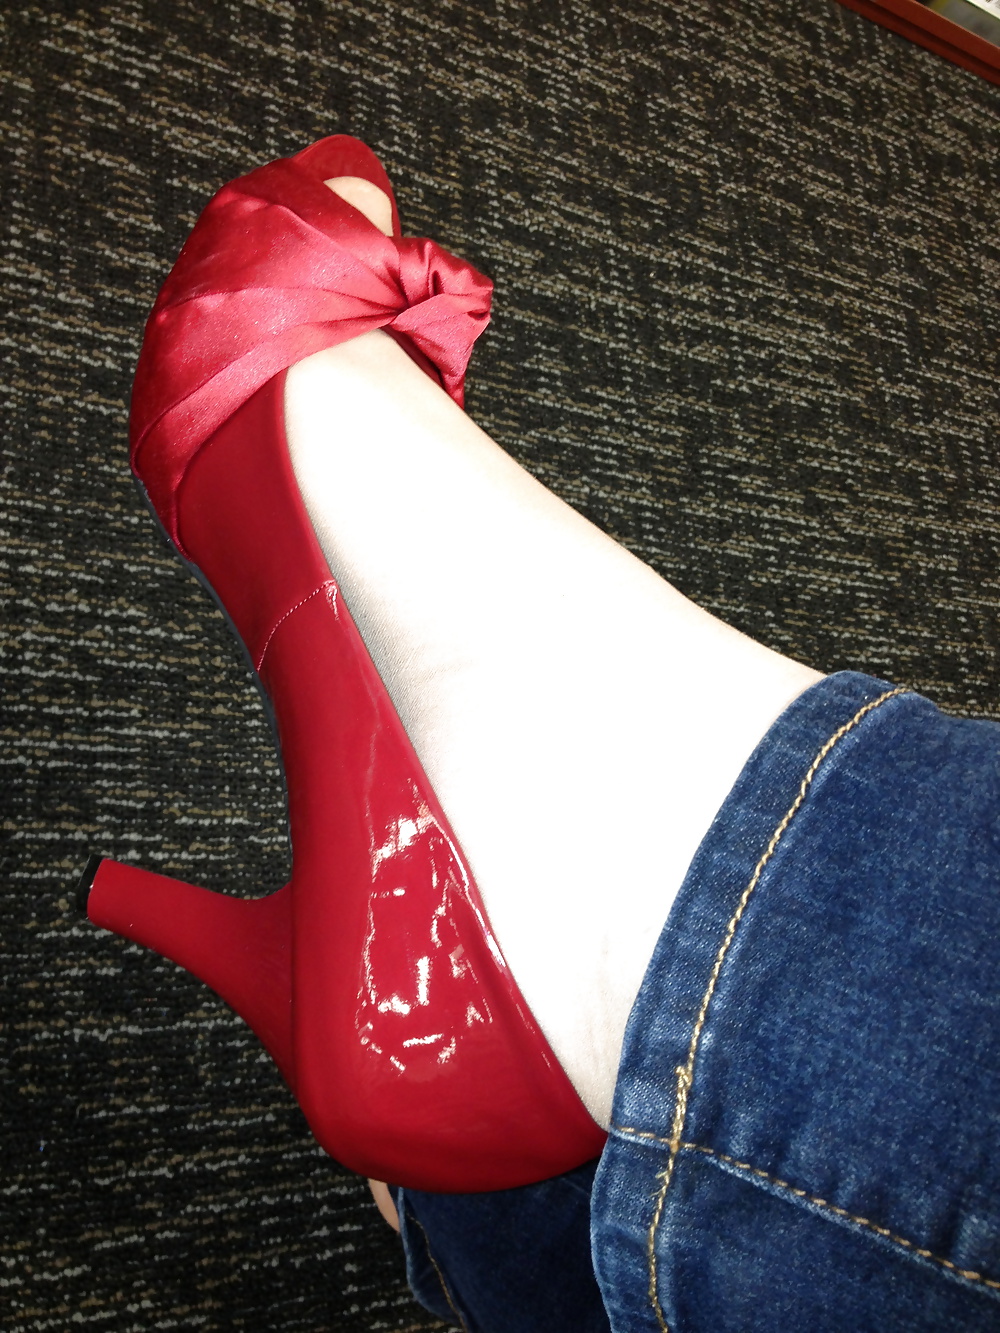 Strumpf Füße Auf Roten Absätzen In Schuhgeschäft Versuchen, #25674009